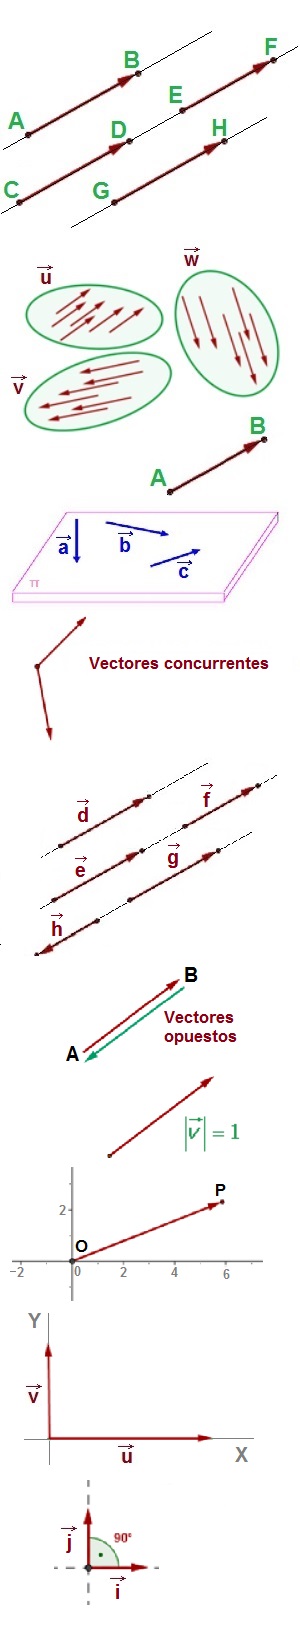 Clasificación de vectores